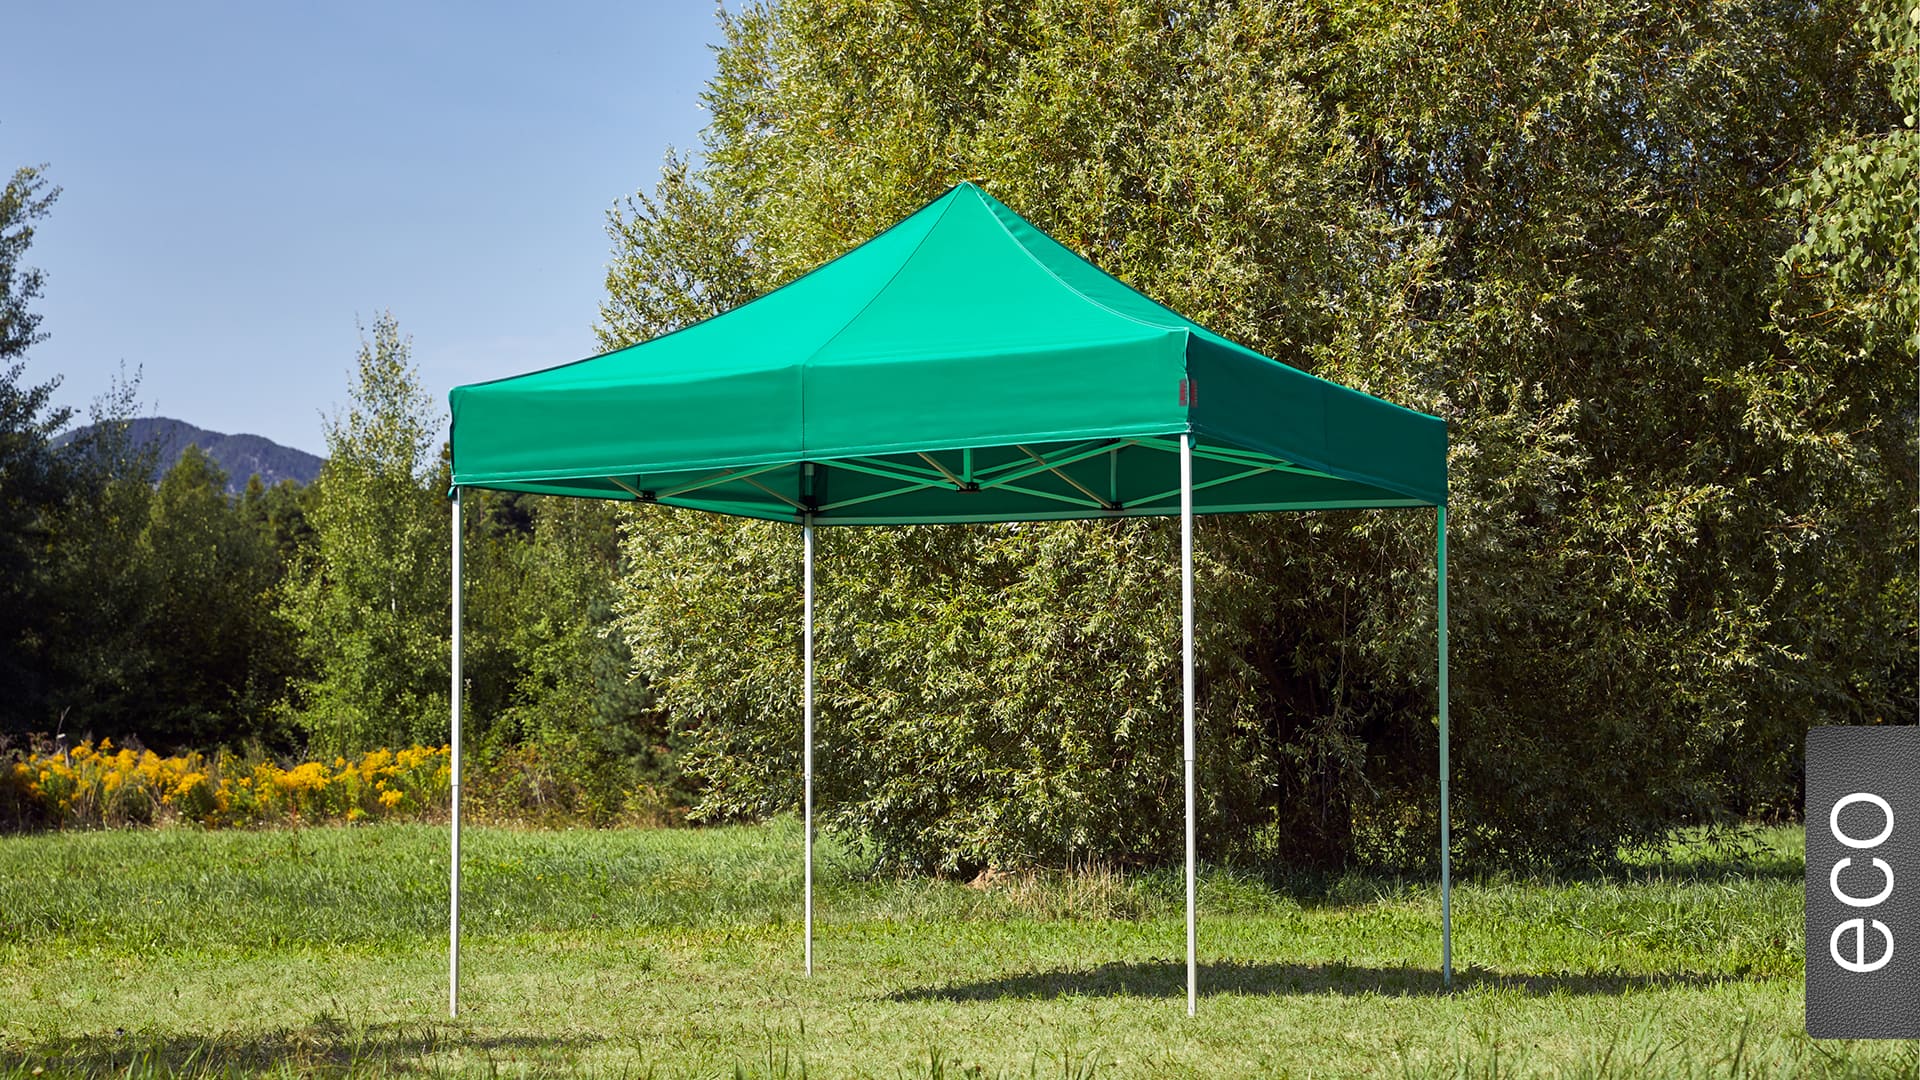 Der 3x3 Faltpavillon der Produktlinie eco mit einem grünen Dach aufgestellt im Garten.